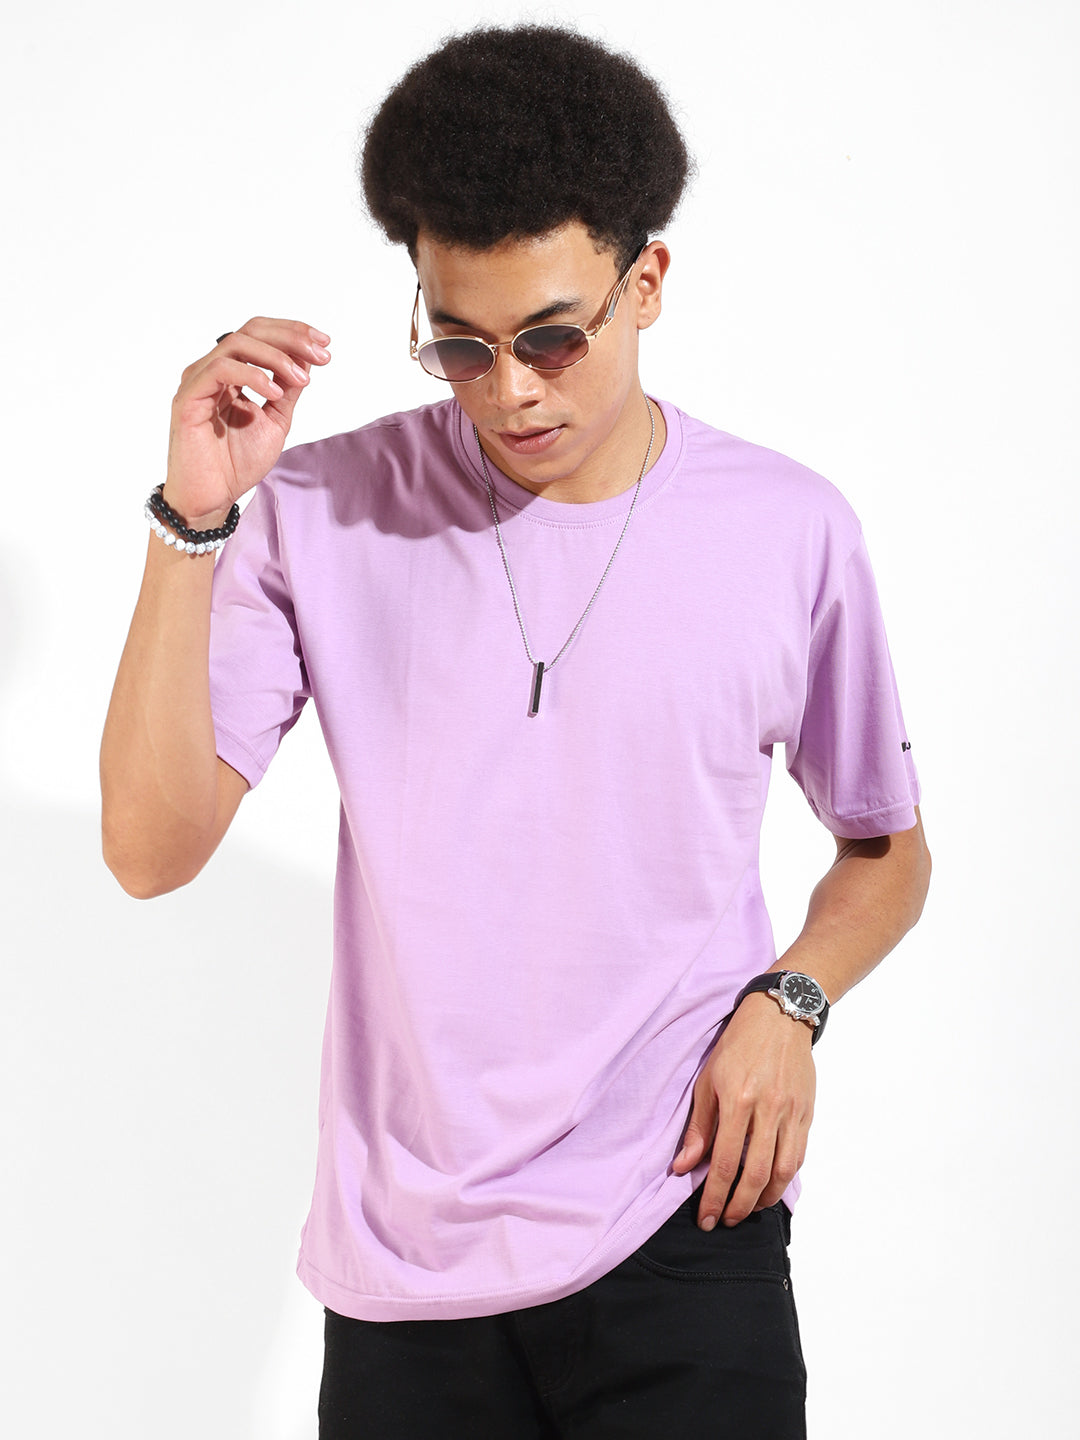 Lavender Cotton Slim Fit T-Shirt